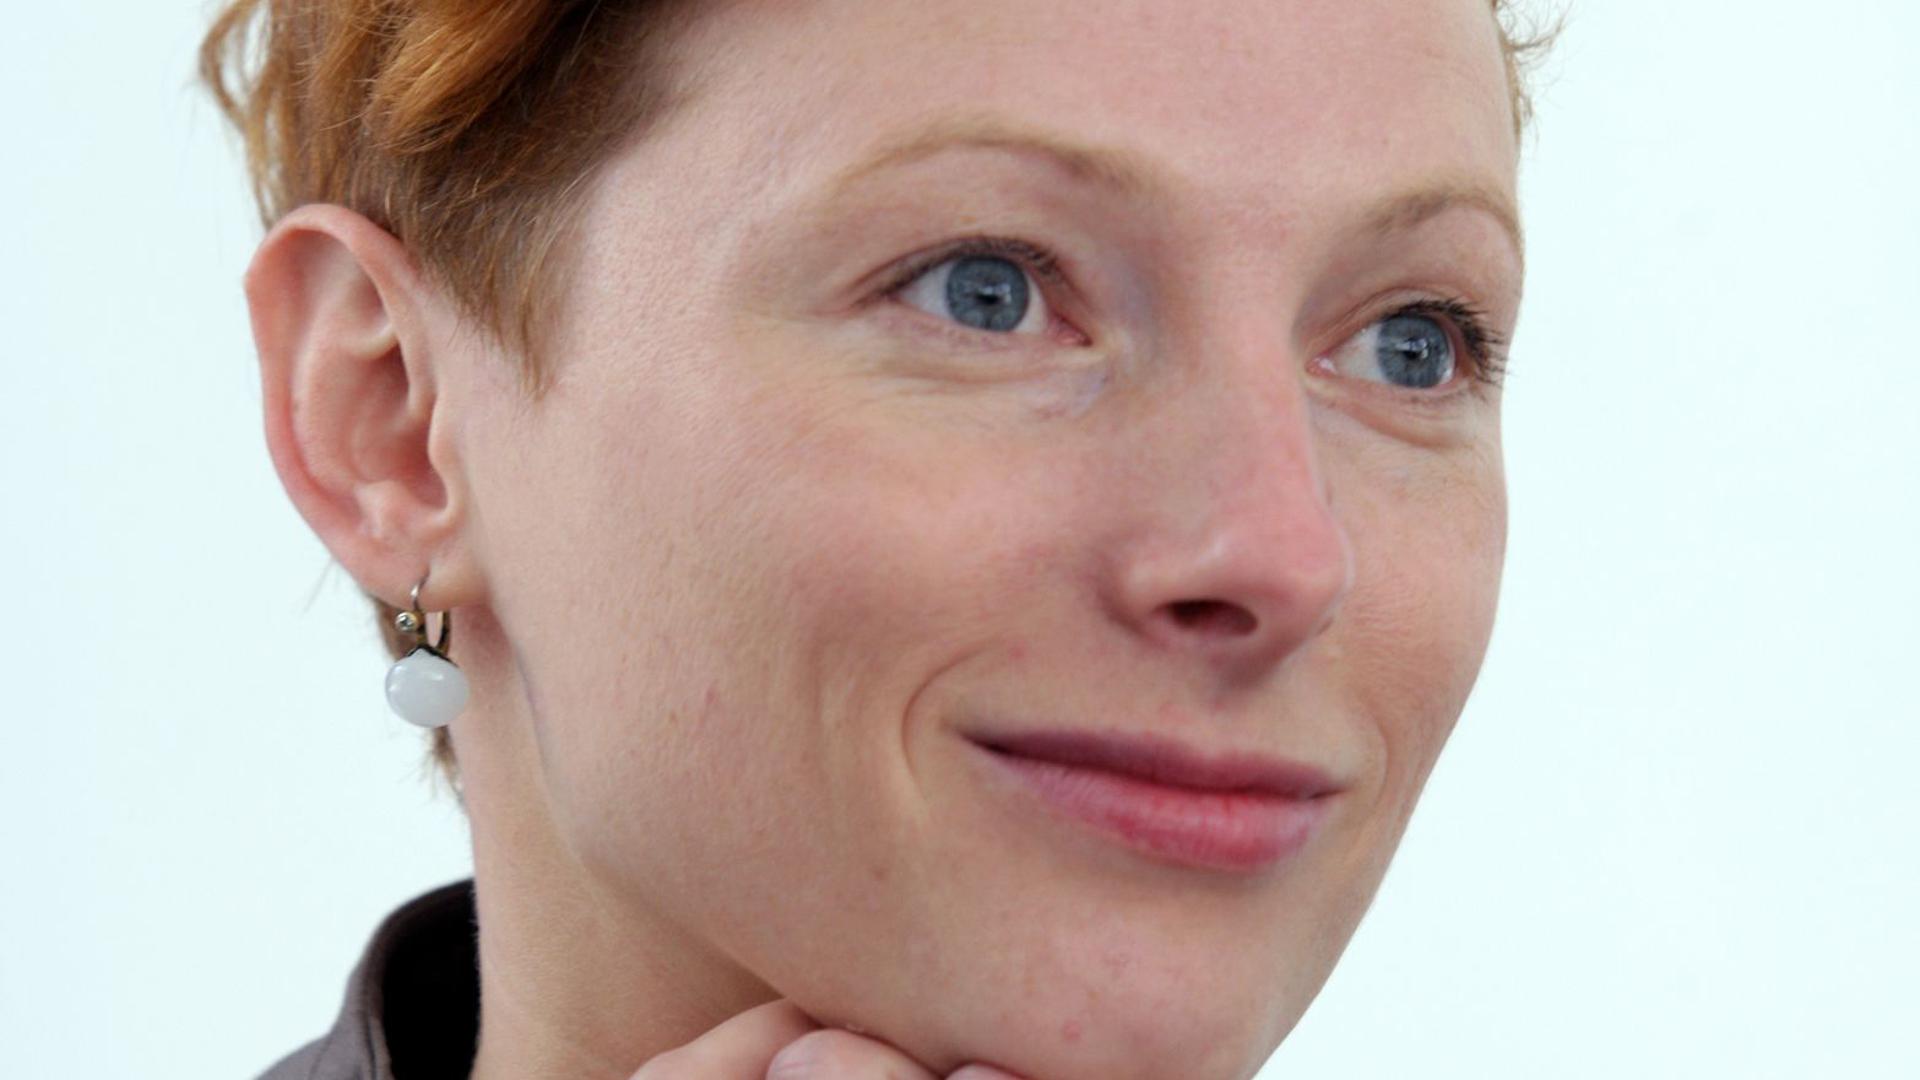 Katarzyna Wielga-Skolimowska übernimmt die Leitung der Kulturstiftung des Bundes.